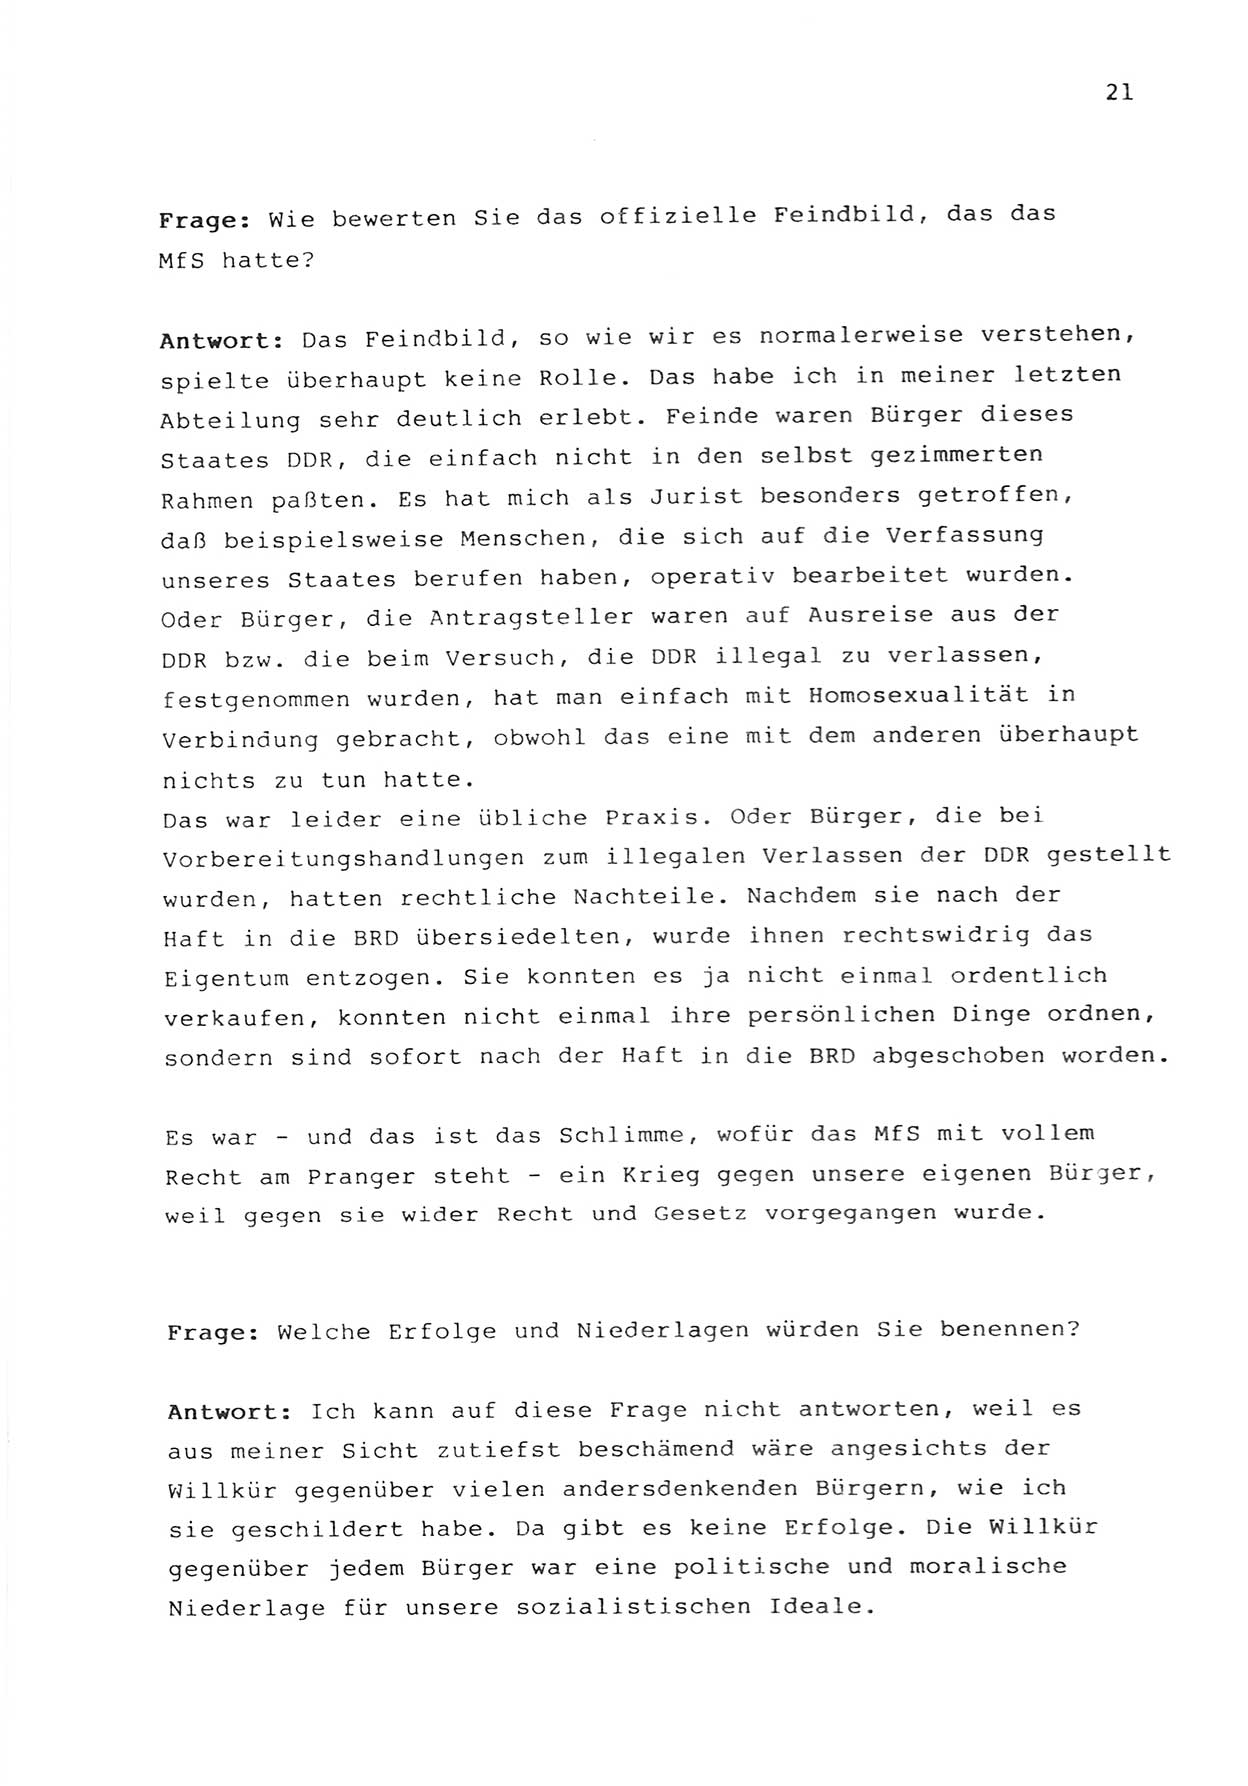 Zwie-Gespräch, Beiträge zur Bewältigung der Stasi-Vergangenheit [Deutsche Demokratische Republik (DDR)], Ausgabe Nr. 1, Berlin 1991, Seite 21 (Zwie-Gespr. Ausg. 1 1991, S. 21)